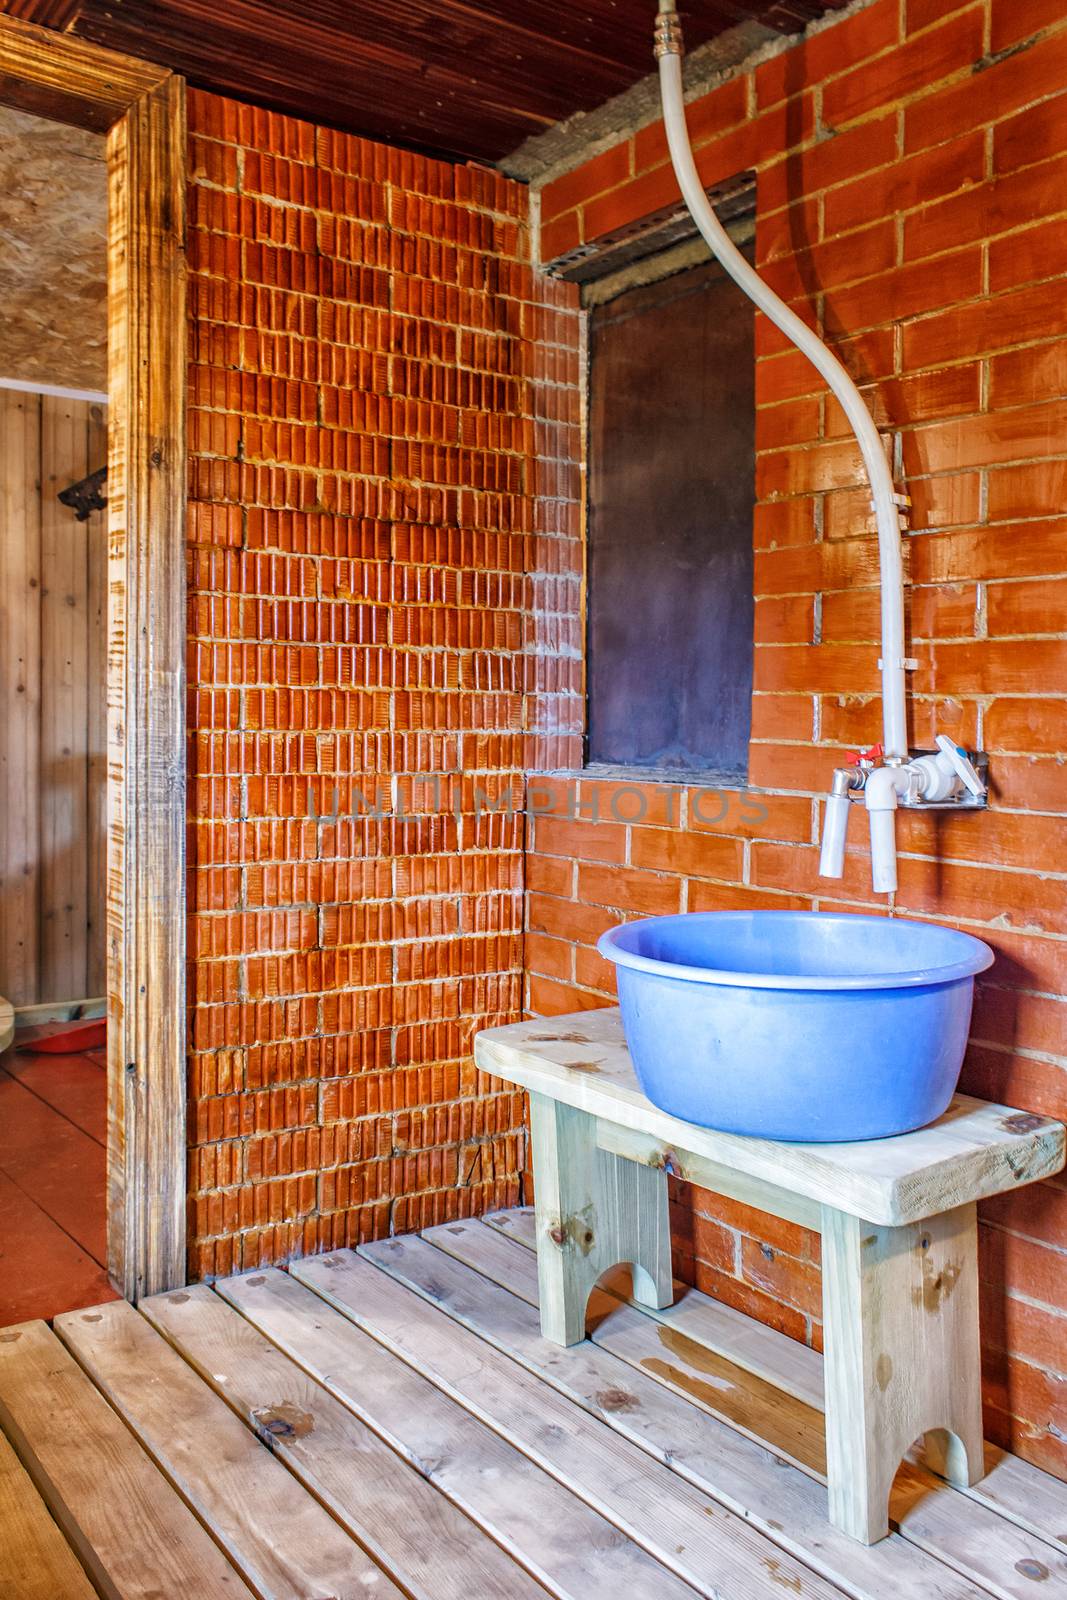 interior a rustic bath with blue tub